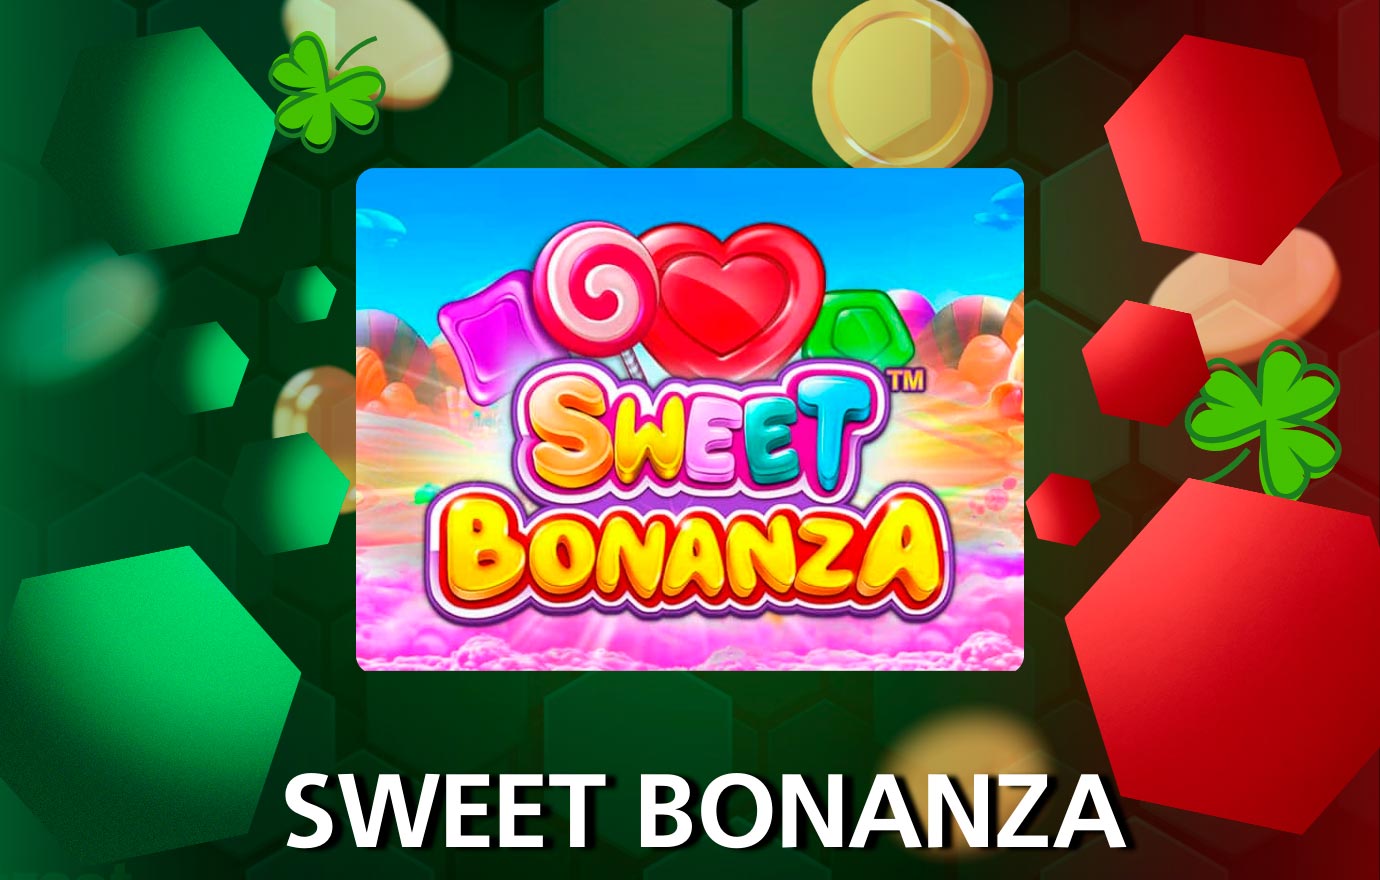 Sweet Bonanza es una video tragamonedas popular en Codere Casino